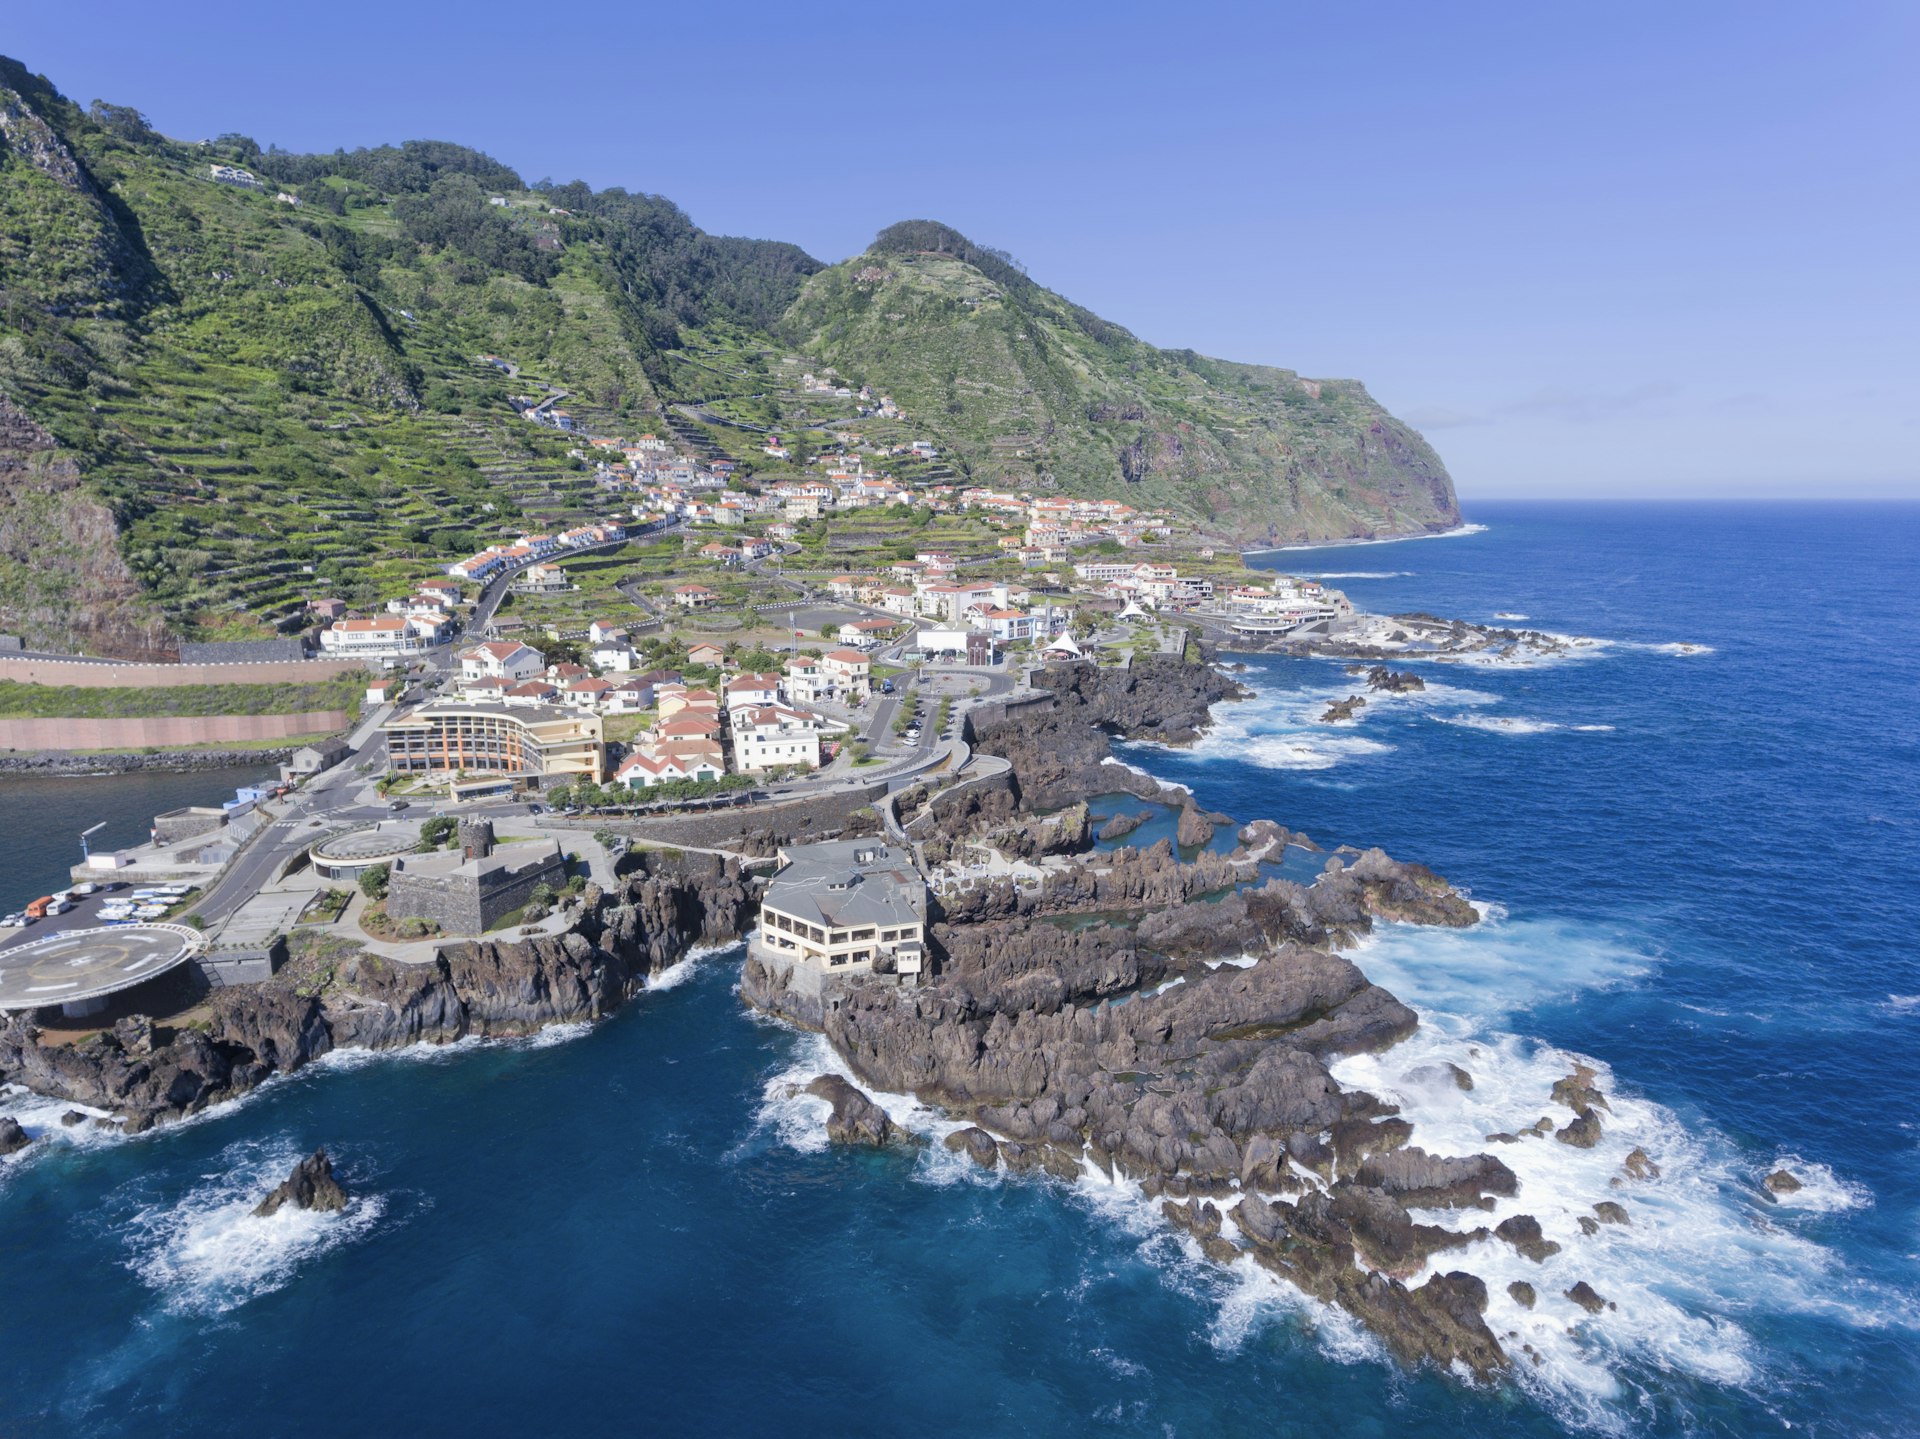 Aerial view of Porto Moniz seaside tourist town, Madeira island, Portugal .